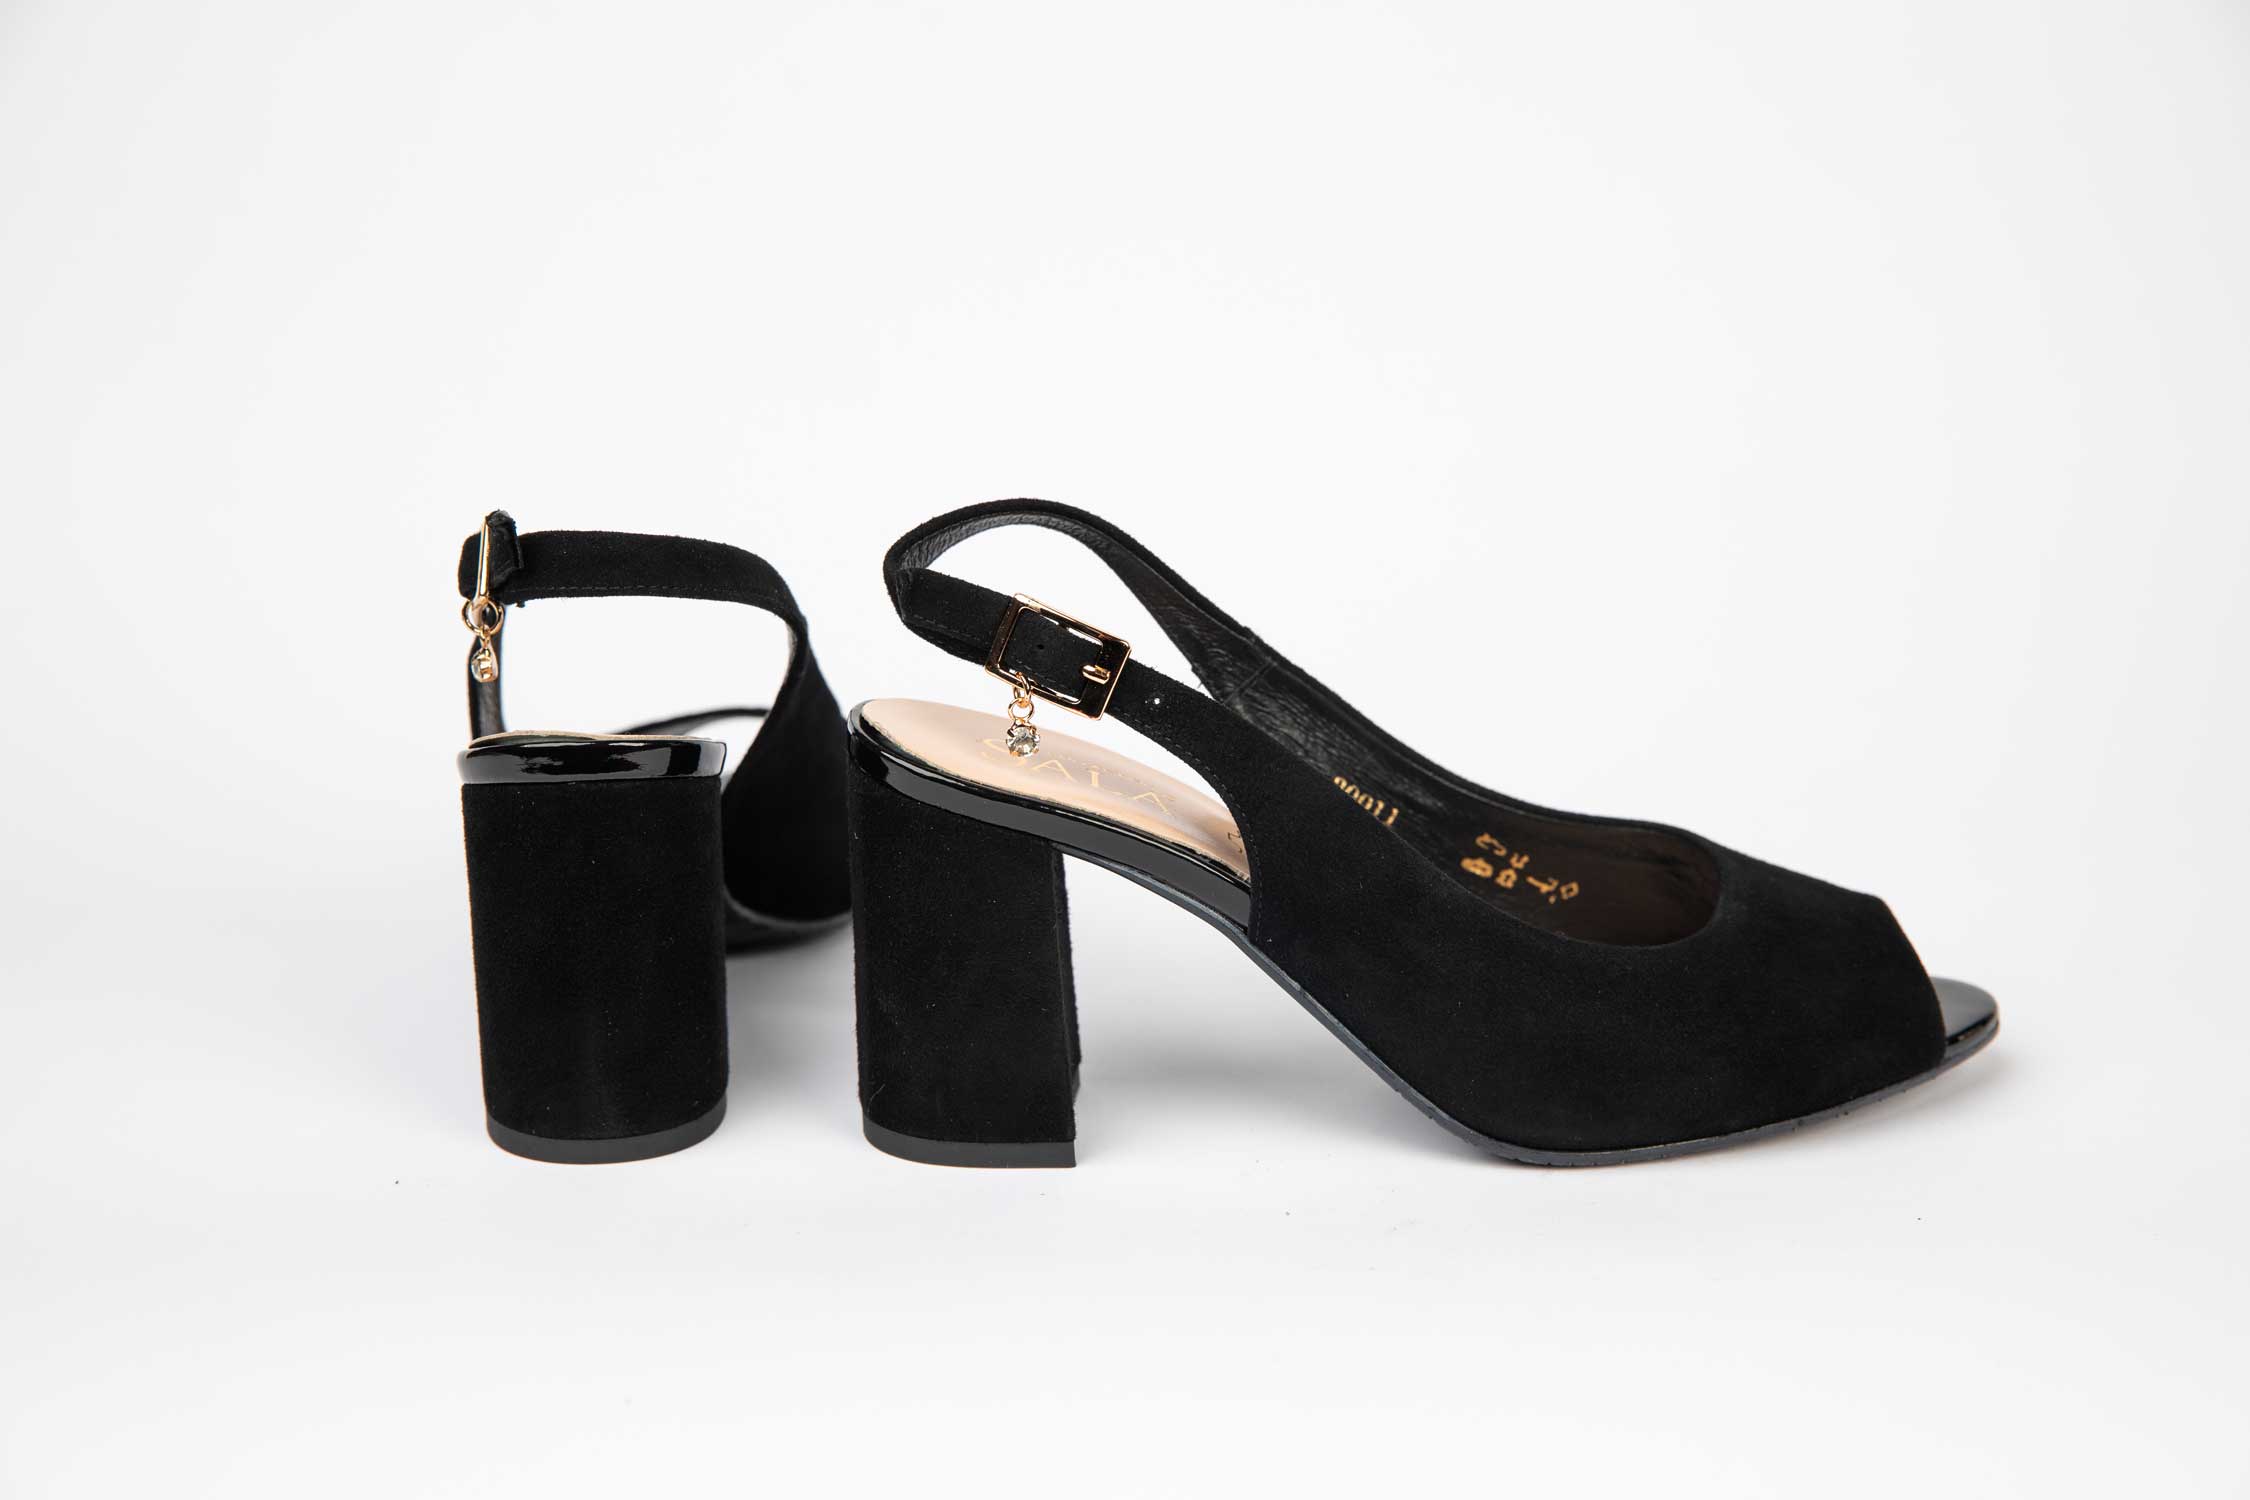 Sandale dama elegante din piele naturala 20011 negru velur